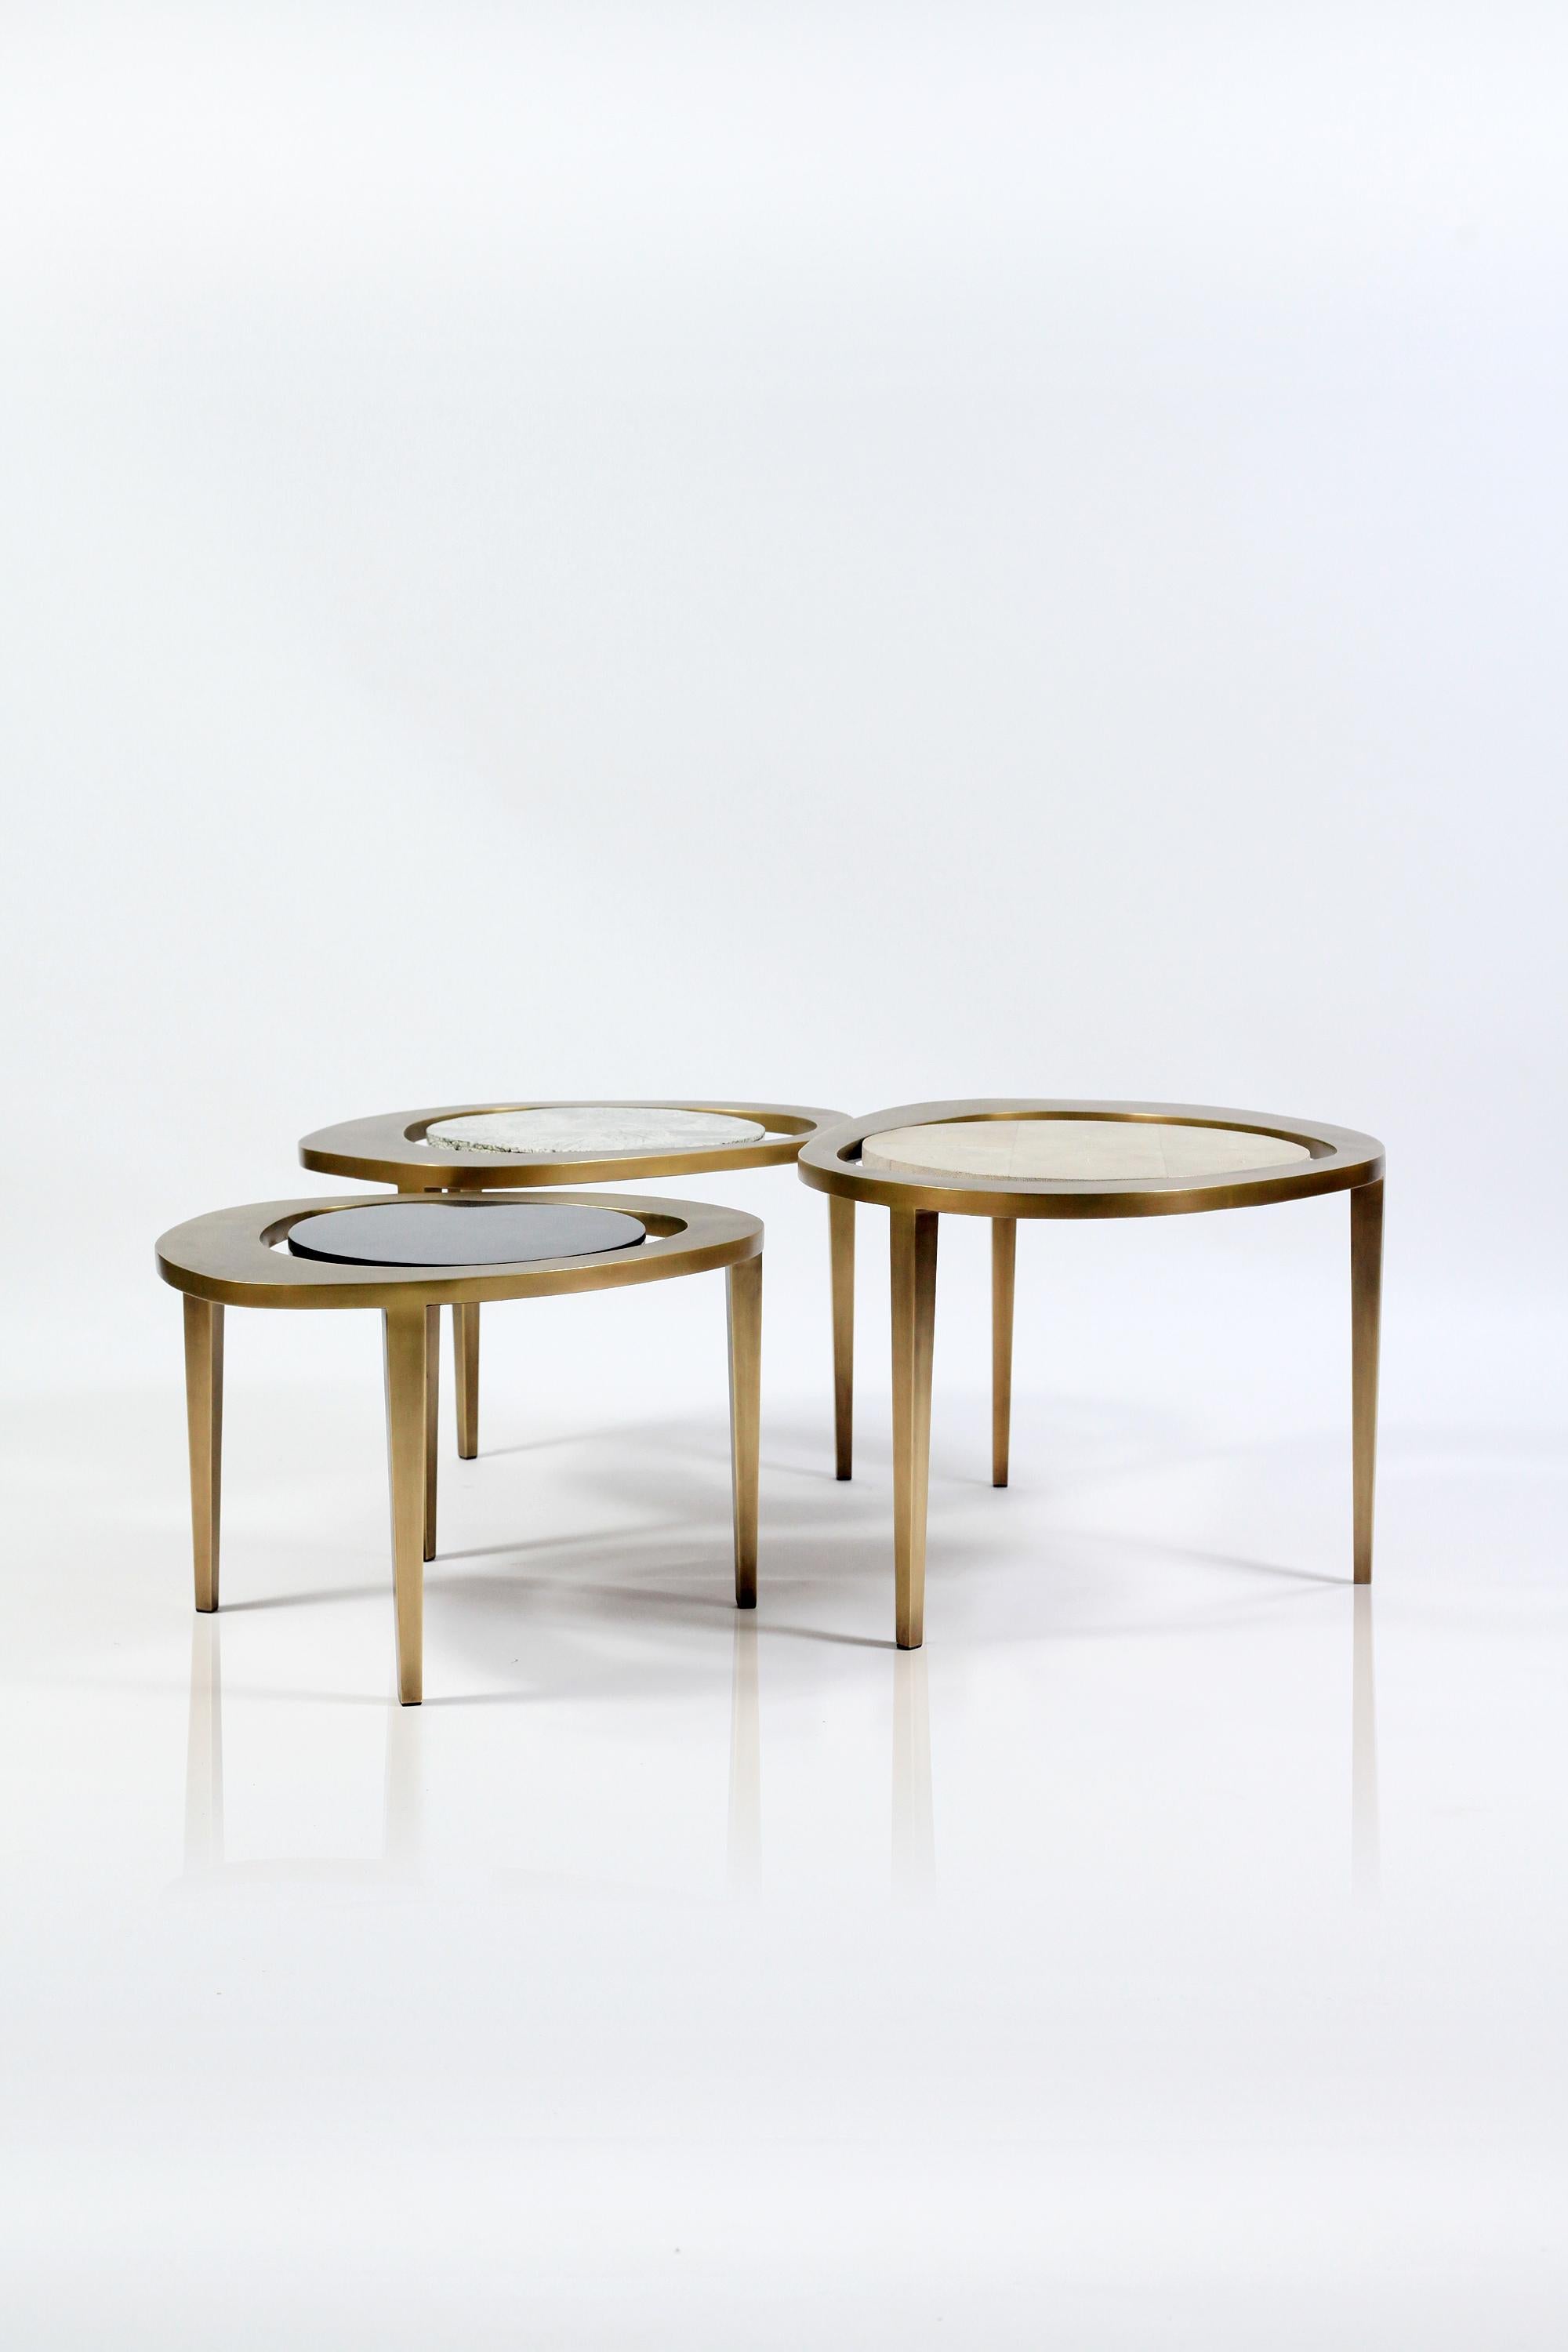 La petite table basse gigogne Peacock est une pièce emblématique de R&Y Augousti et l'une de ses premières créations. Cette pièce à la fois minimaliste et sculpturale s'inspire bien sûr de la forme des plumes de paon exotiques. Le plateau est